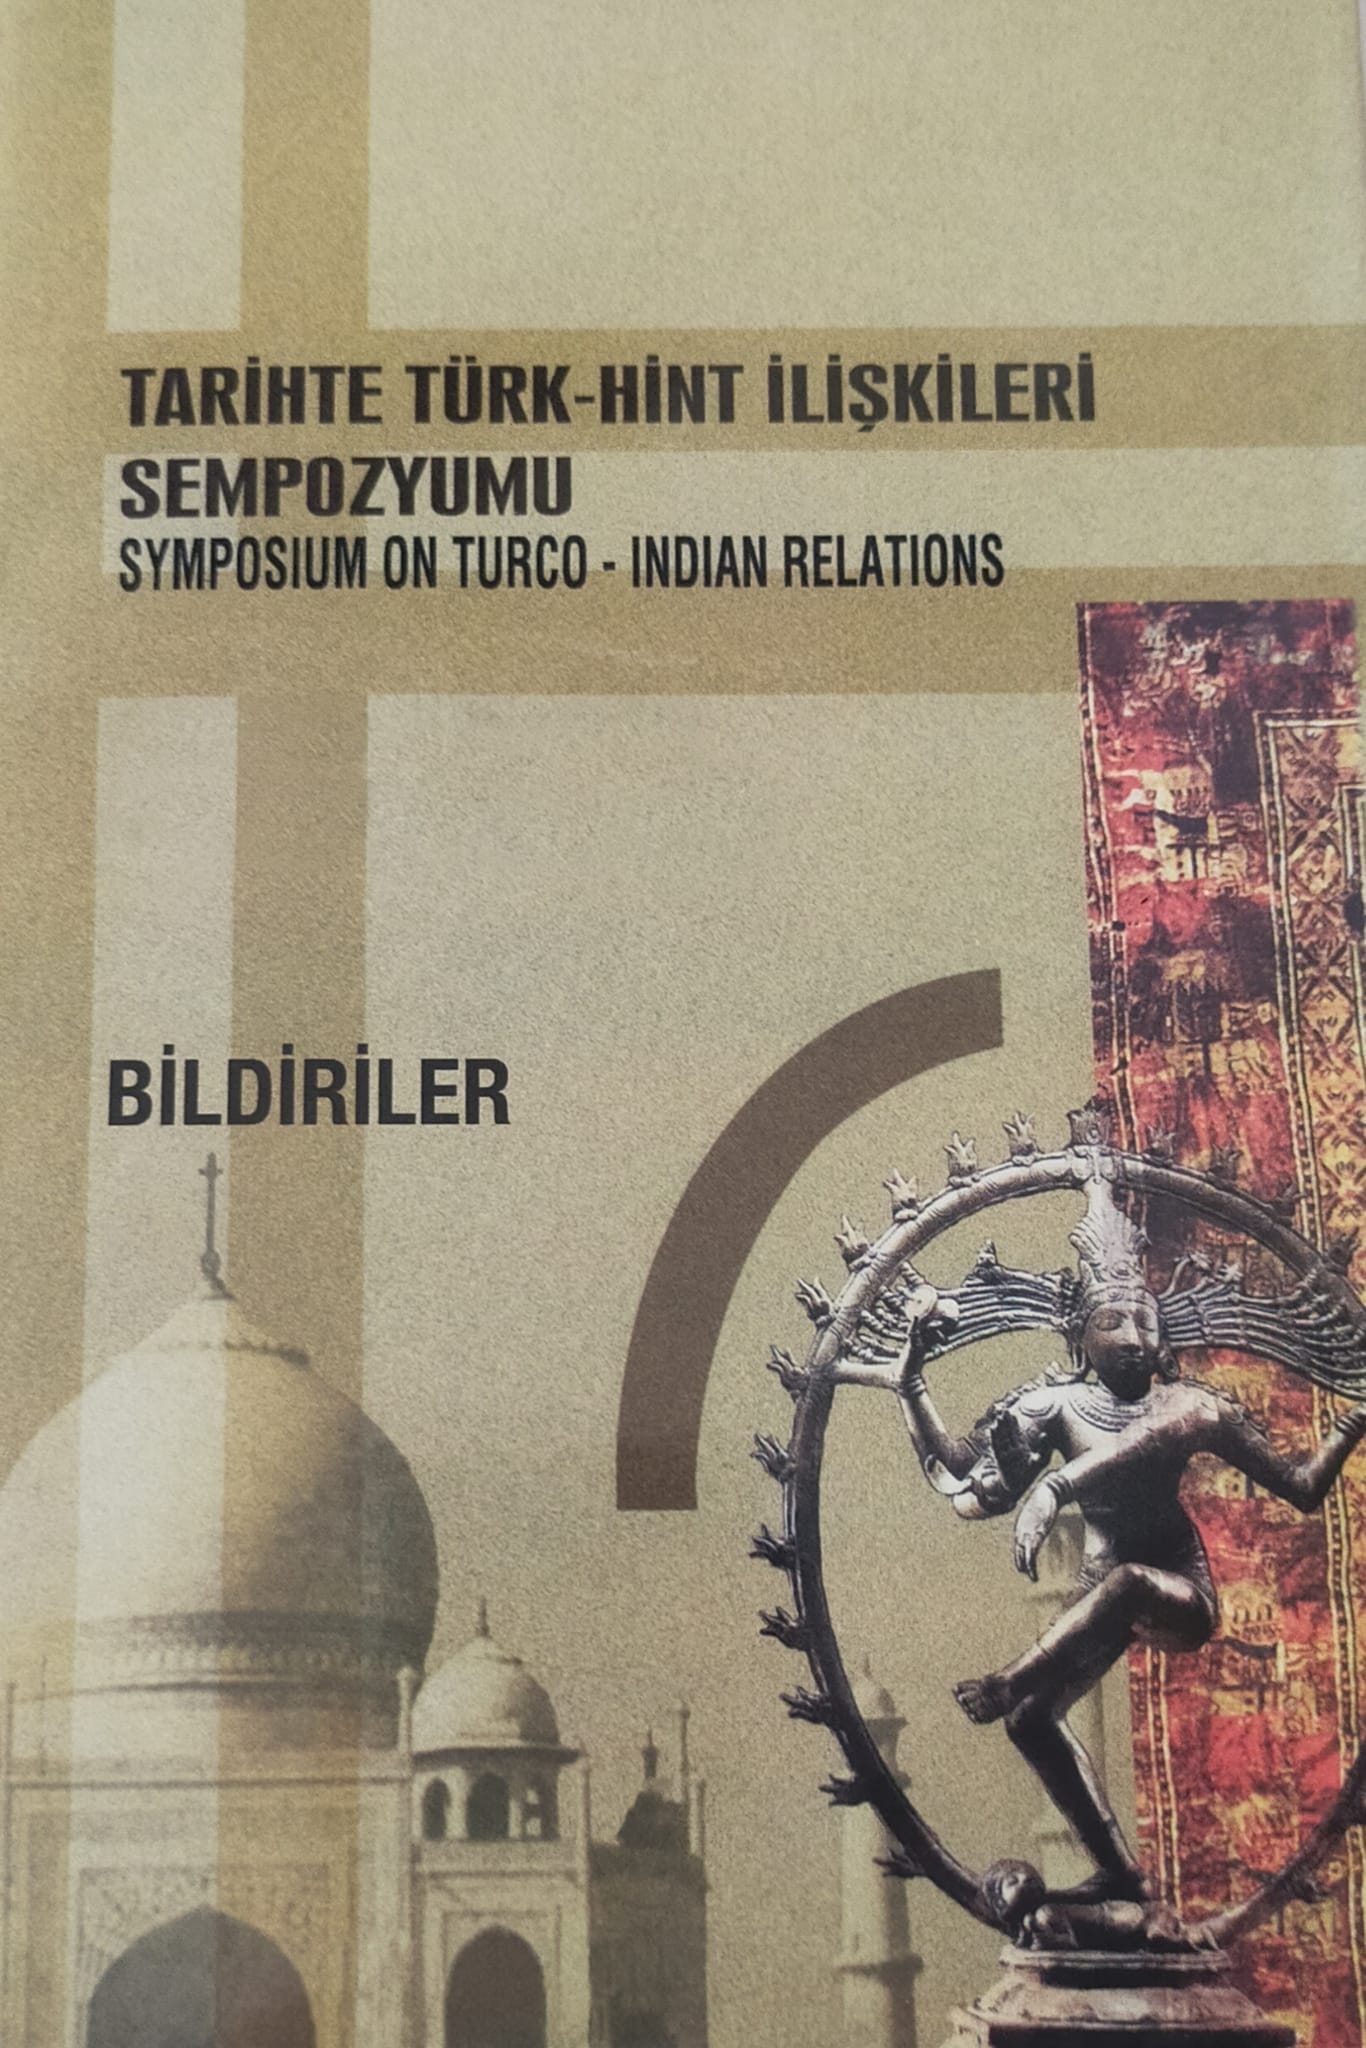 Tarihte Türk-Hint İlişkileri Sempozyumu (Bildiriler) / Symposium on Turco-Indian Relations, 2006